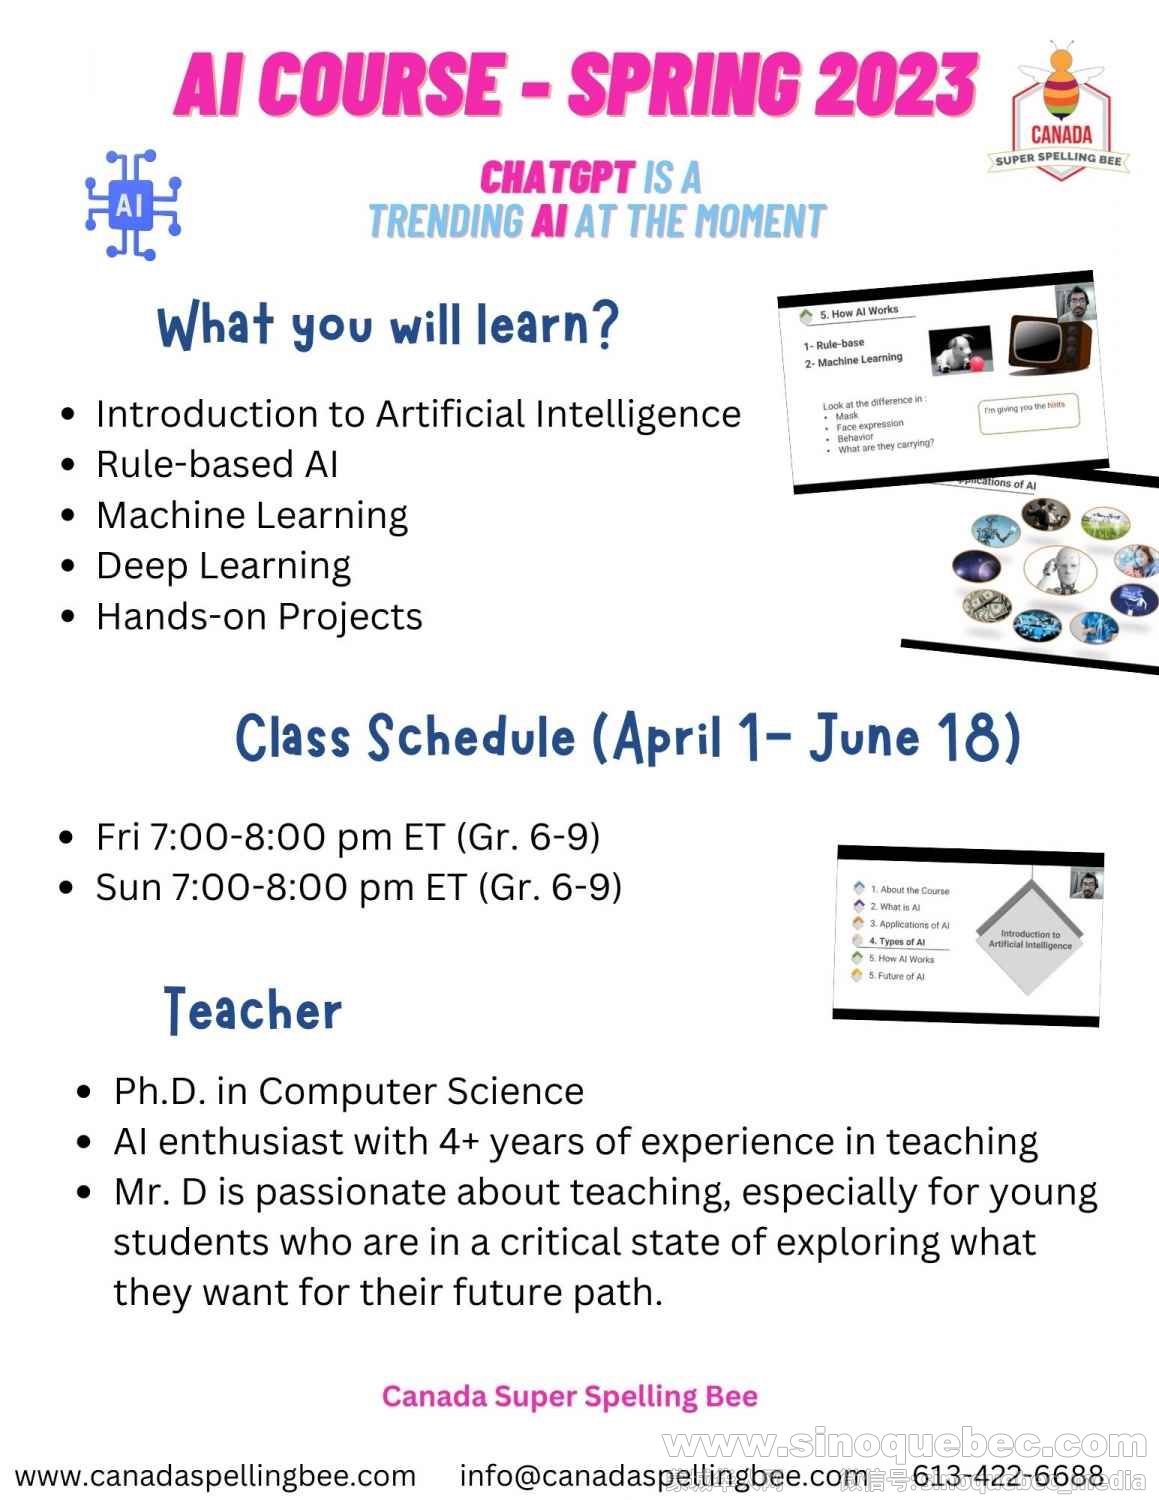 AI Course Flyer - Spring 2023.jpg